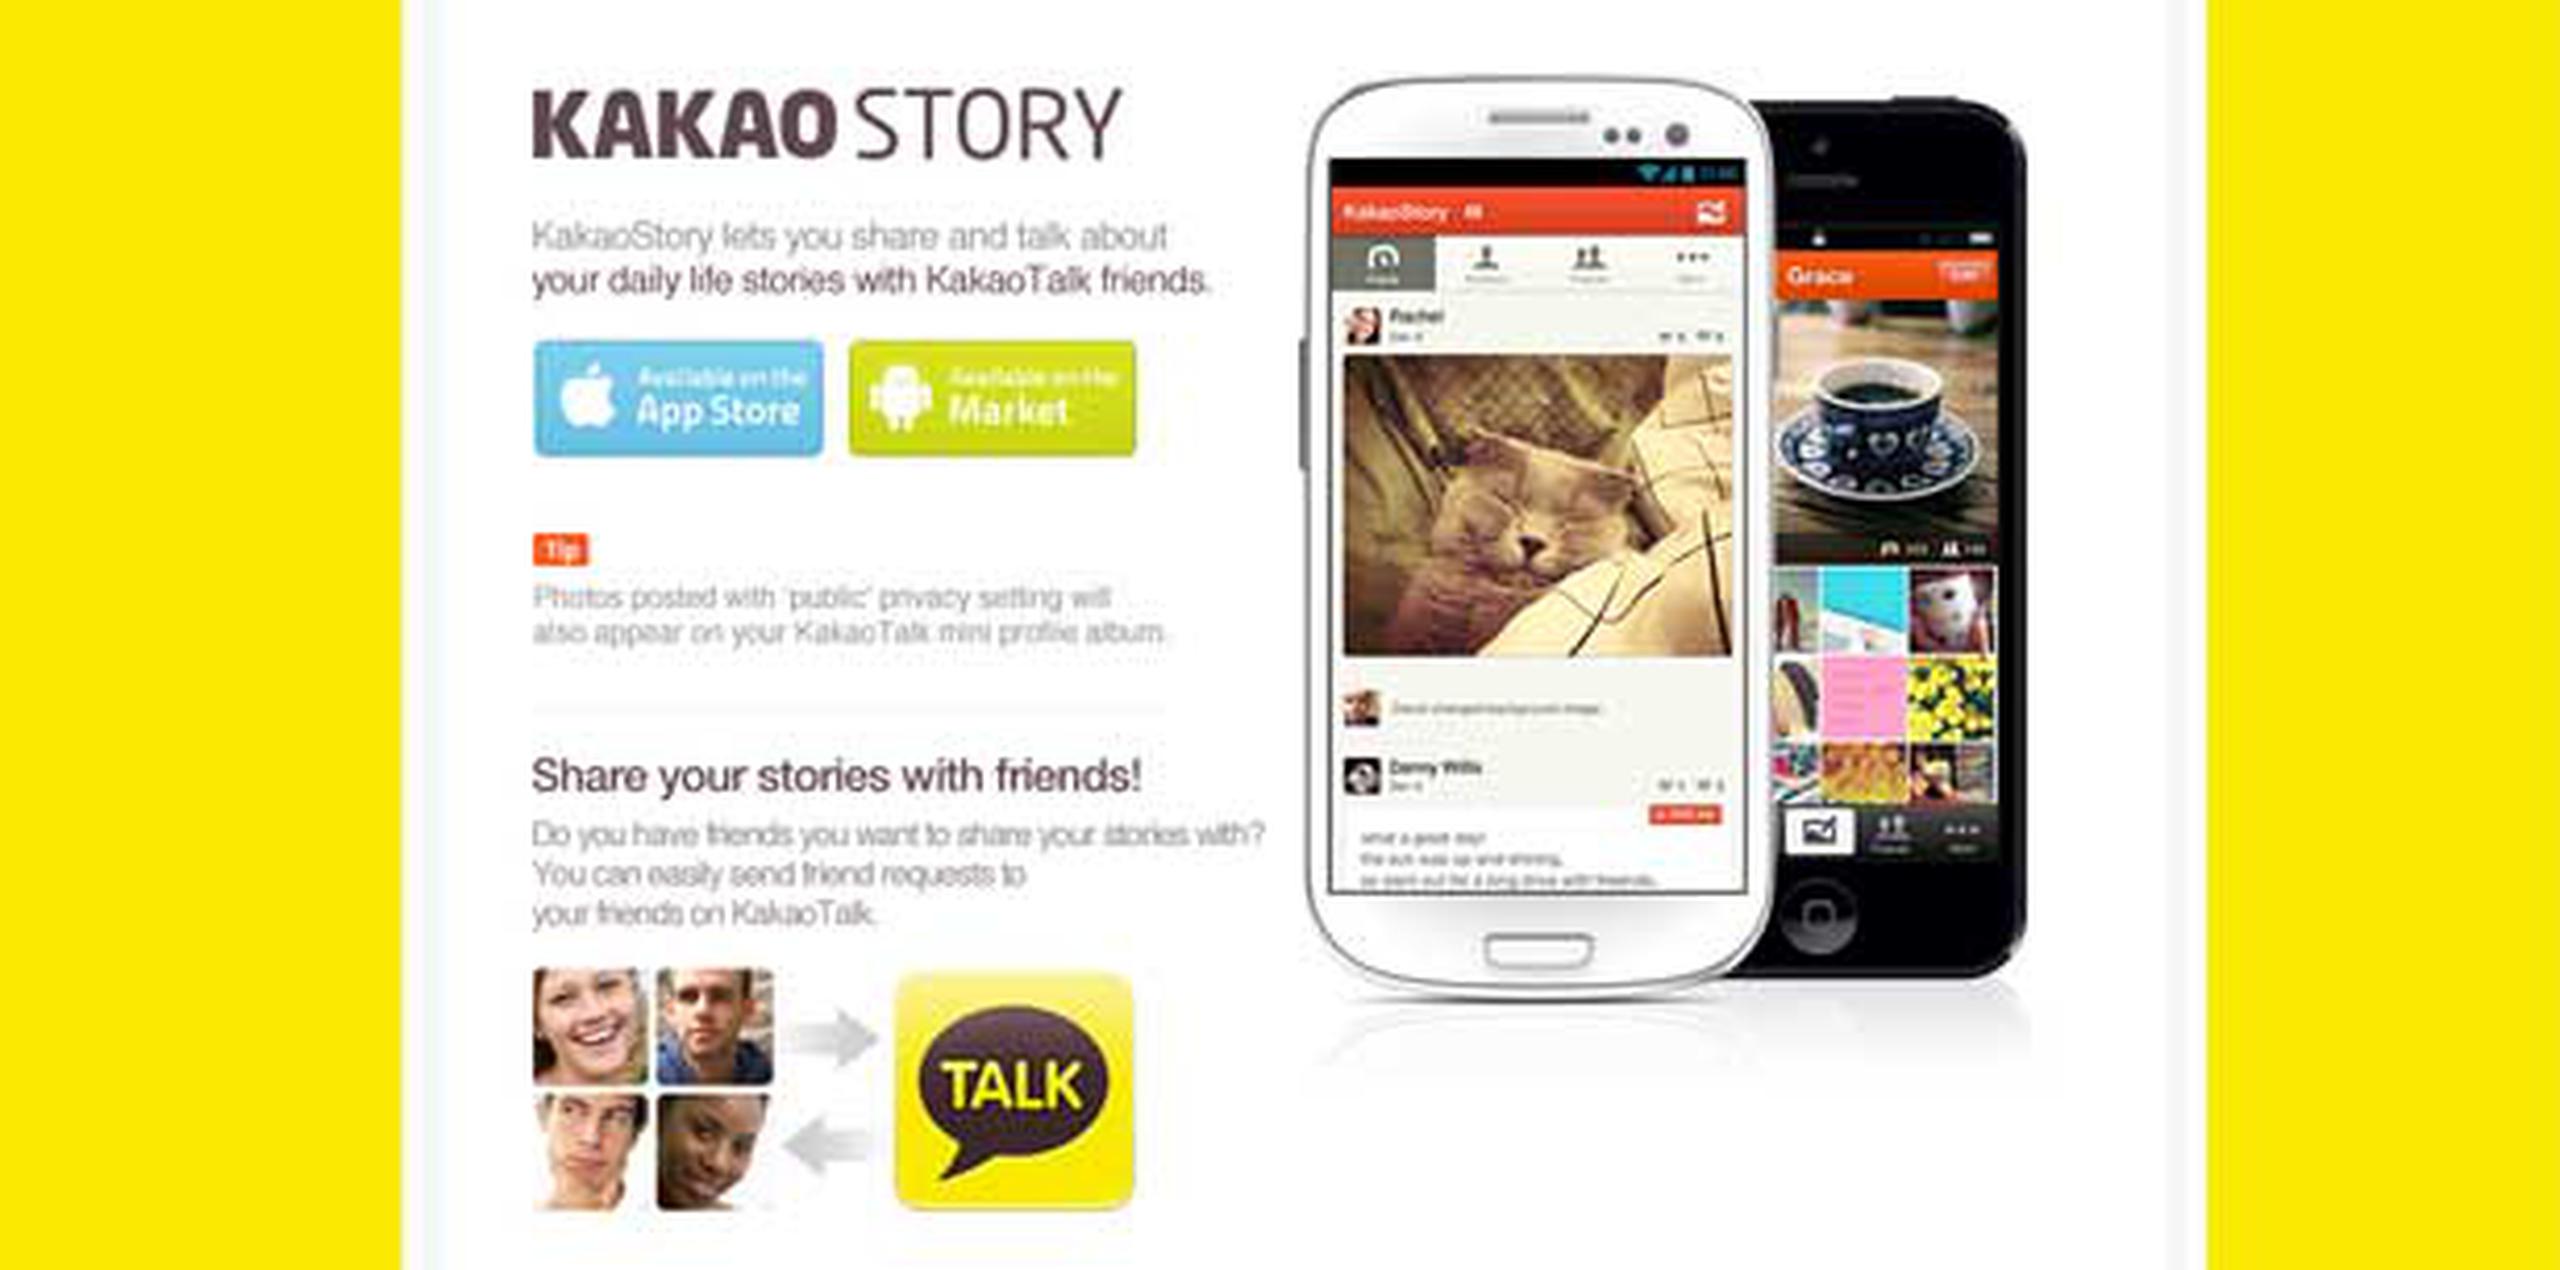 El joven comenzó a compartir sus impresiones sobre lo ocurrido en Kakao Story, una red social para "smartphones" similar a Facebook y muy popular entre los surcoreanos. (Kakao story)